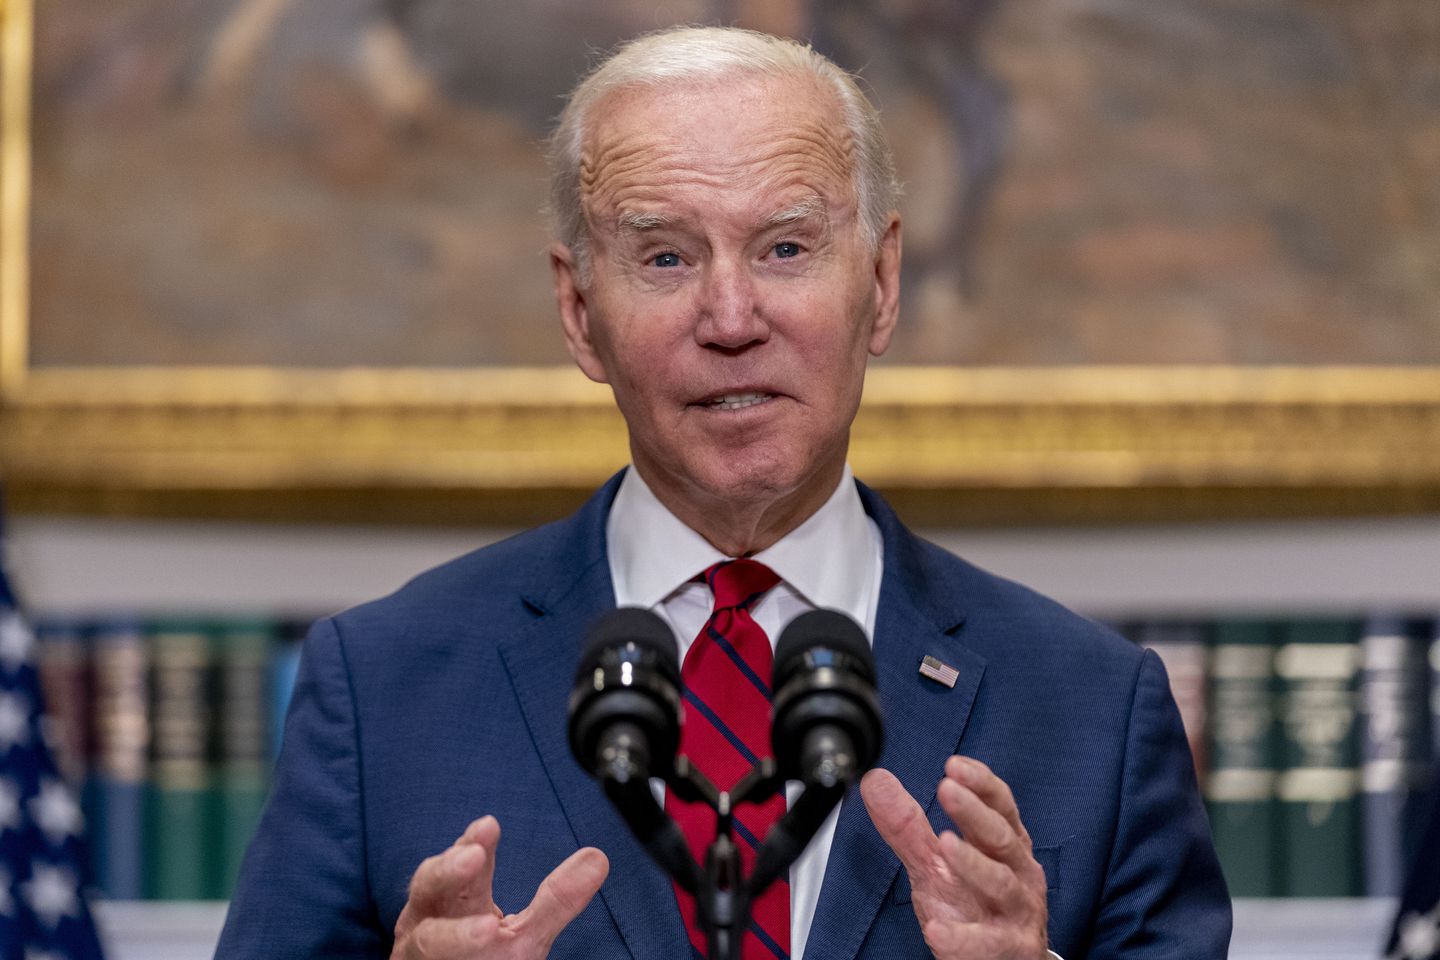 Biden reconoce rechazo por declarar pandemia ‘terminada’